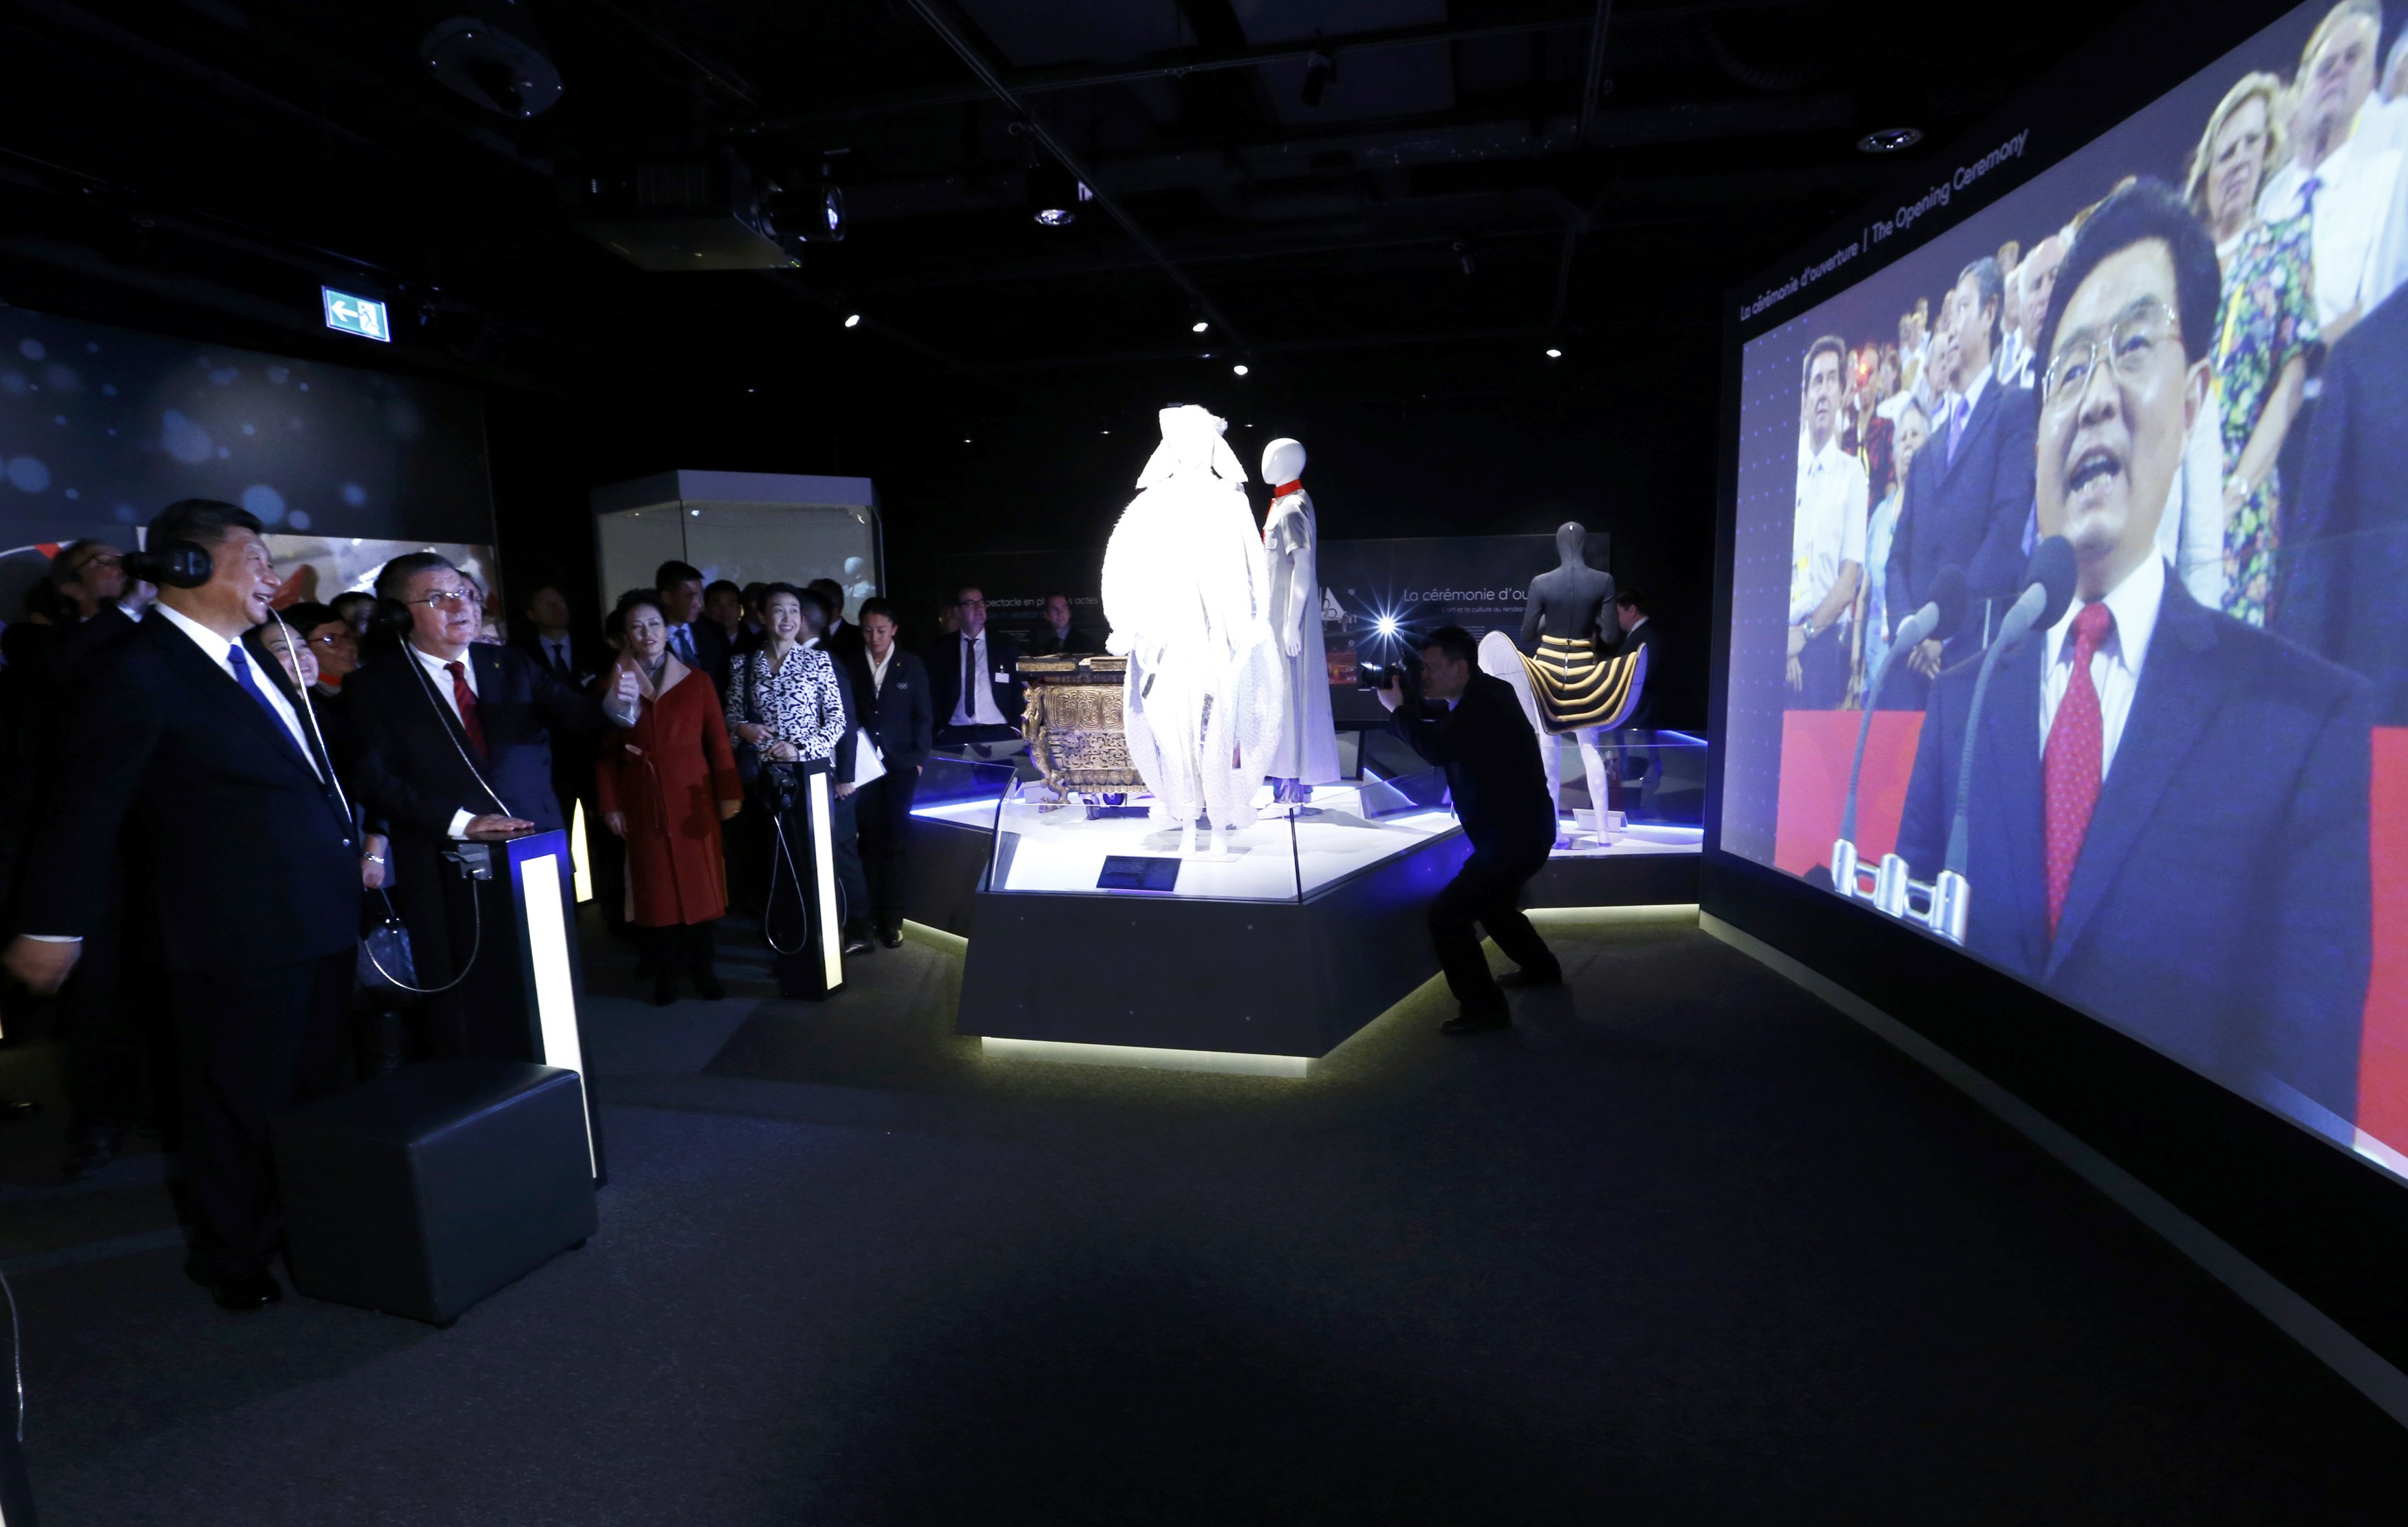 الرئيس الصينى ورئيس اللجنة الأولمبية الدولية يشاهدان مقطع فيديو داخل قاعة بالمتحف الأوليمبى فى سويسرا